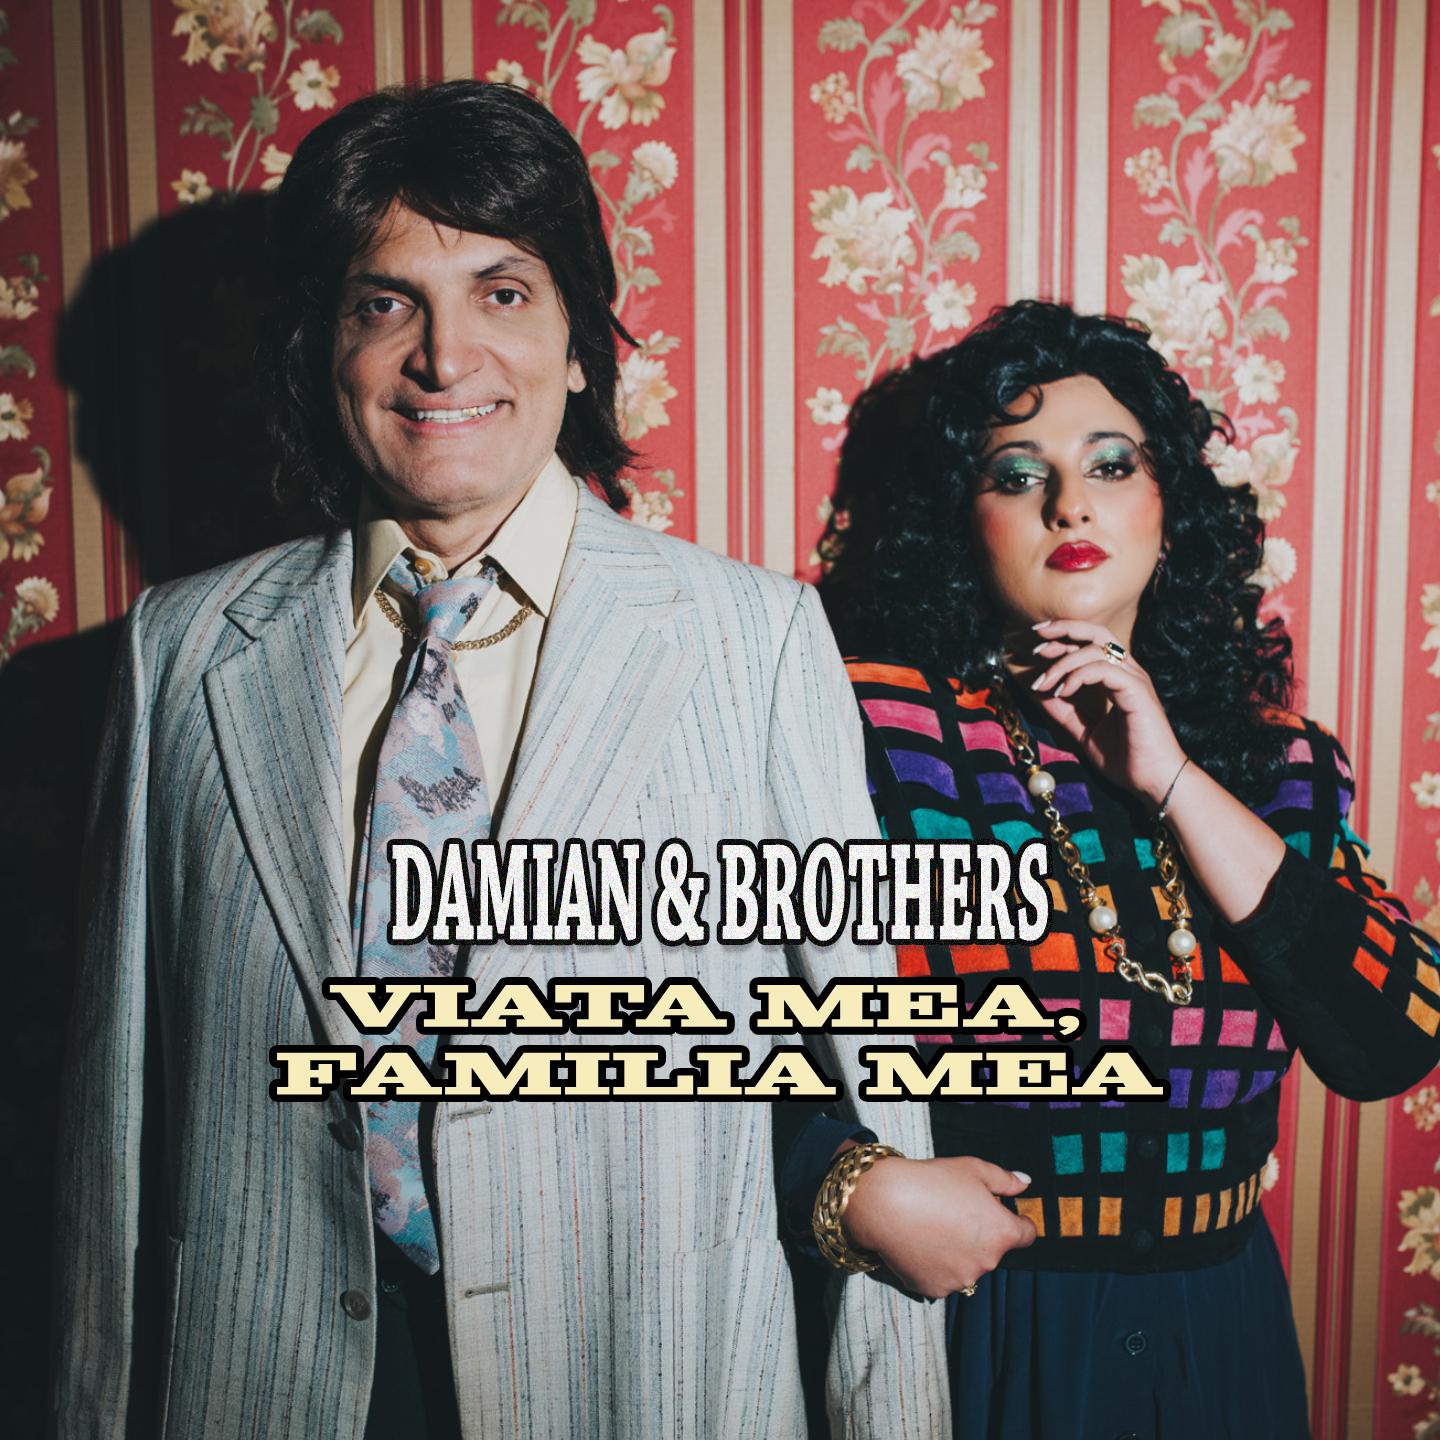 Damian & Brothers - Viata mea, familia mea